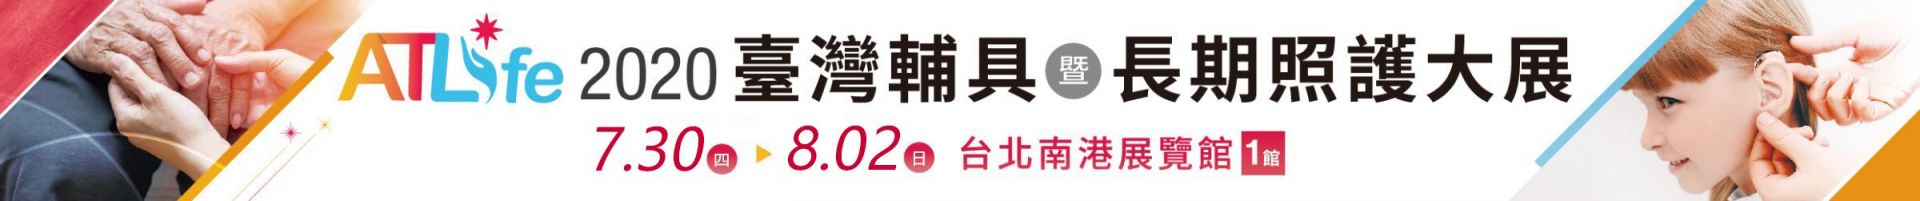 2020ATLife台湾辅具暨长期照护大展